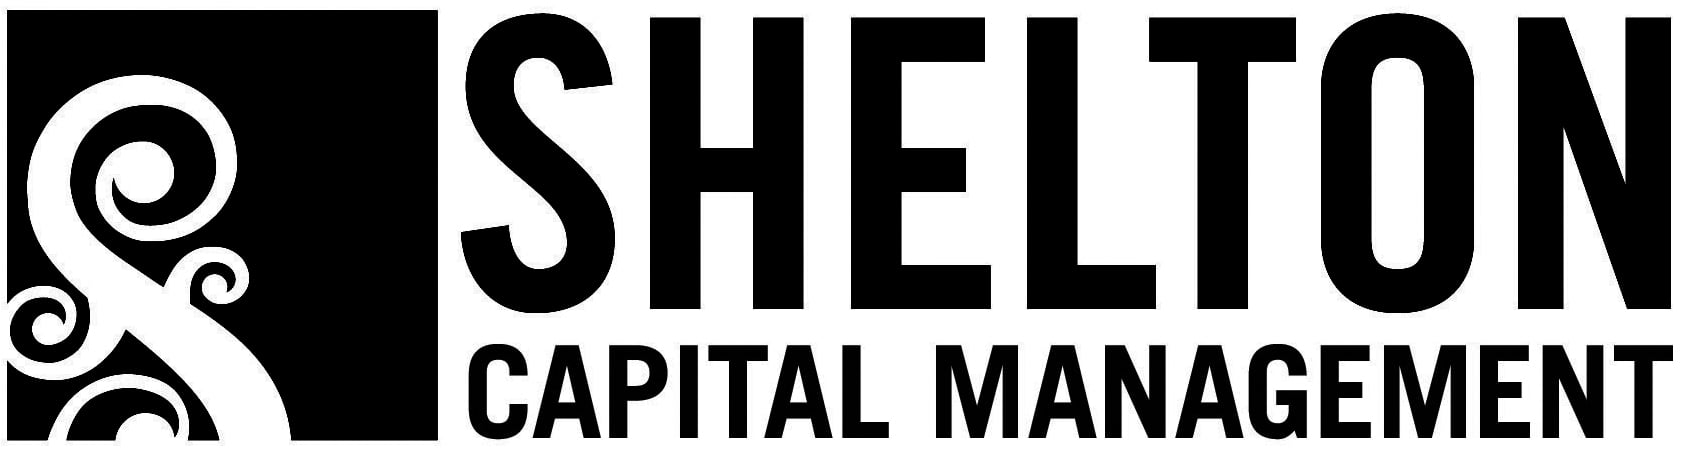 Shelton Capital Management